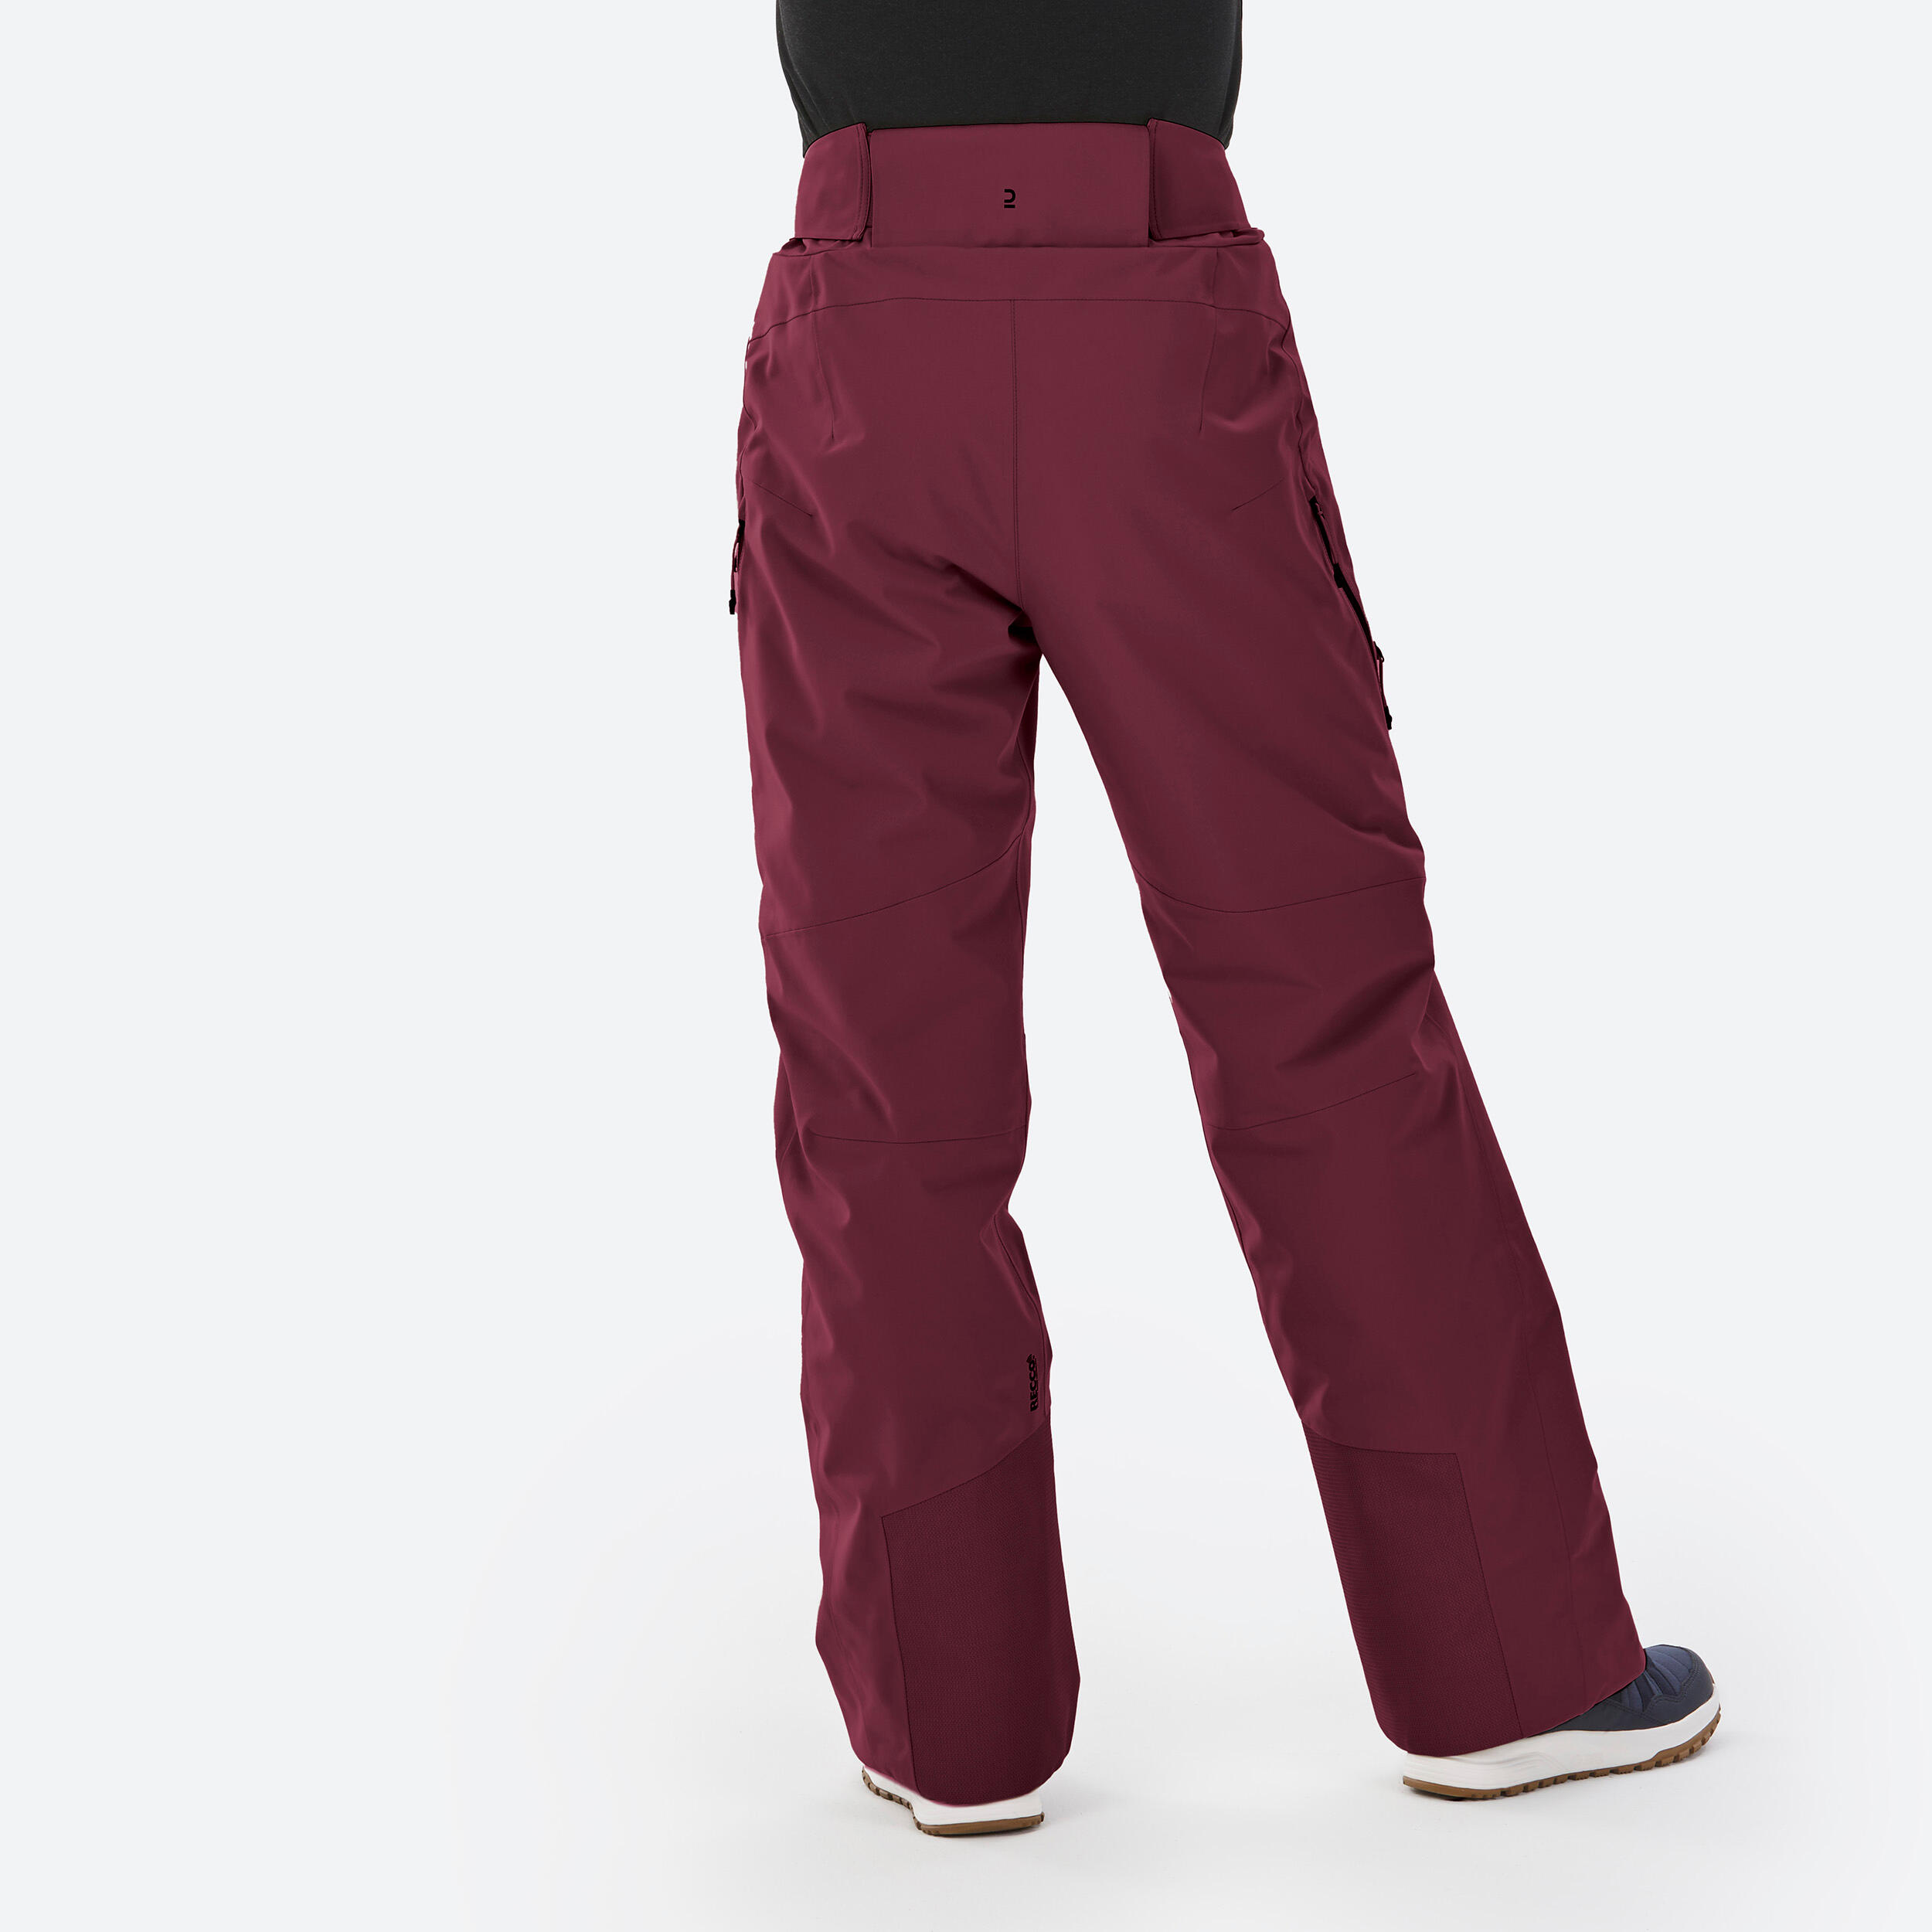 Juniors (Women's) Classic Fit Khaki Pants – Beau's School Uniforms